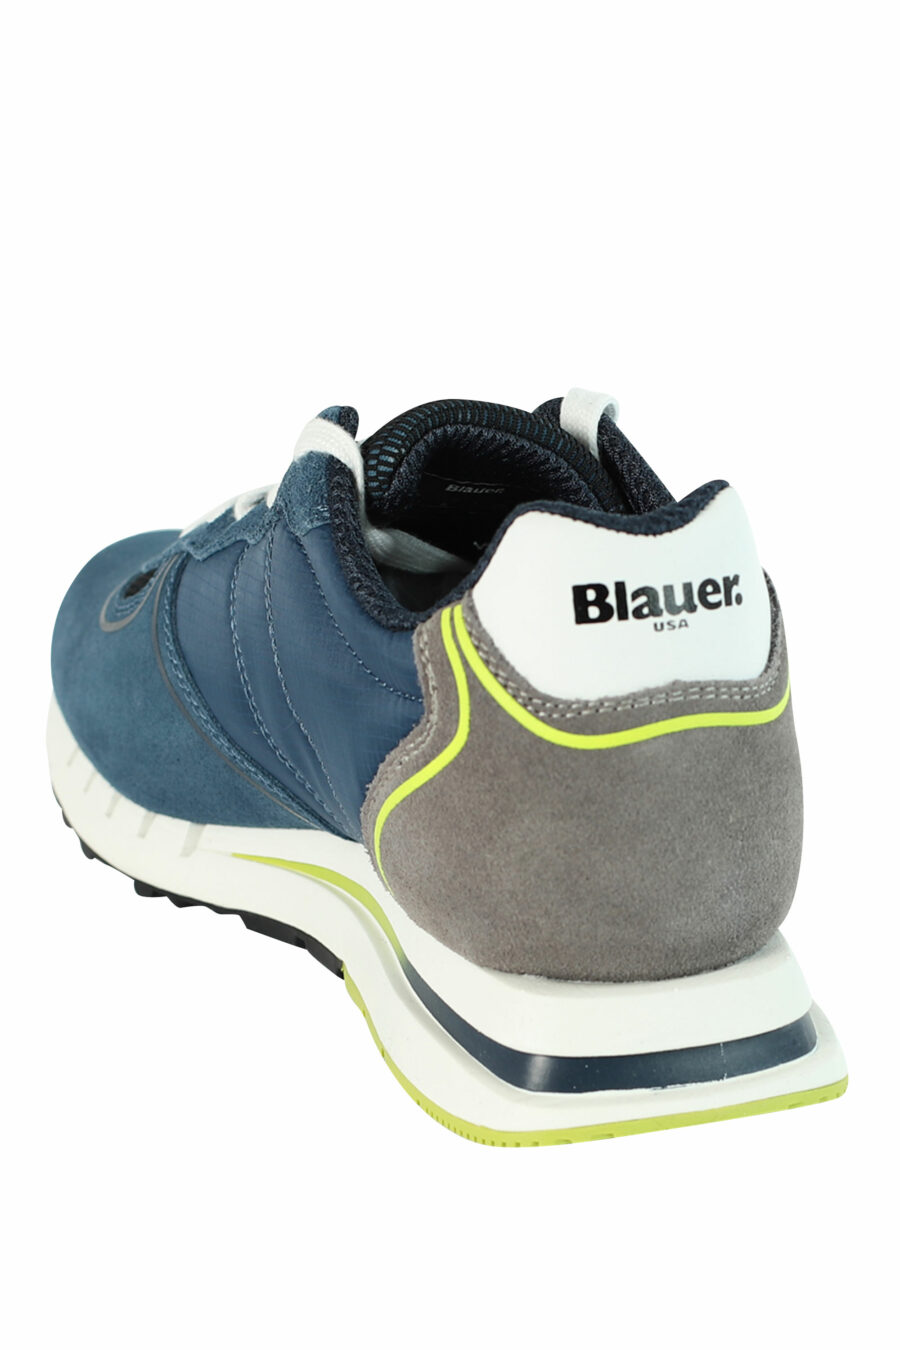 Zapatillas "QUARTZ" azules con grises y detalles amarillos - 8058156499119 4